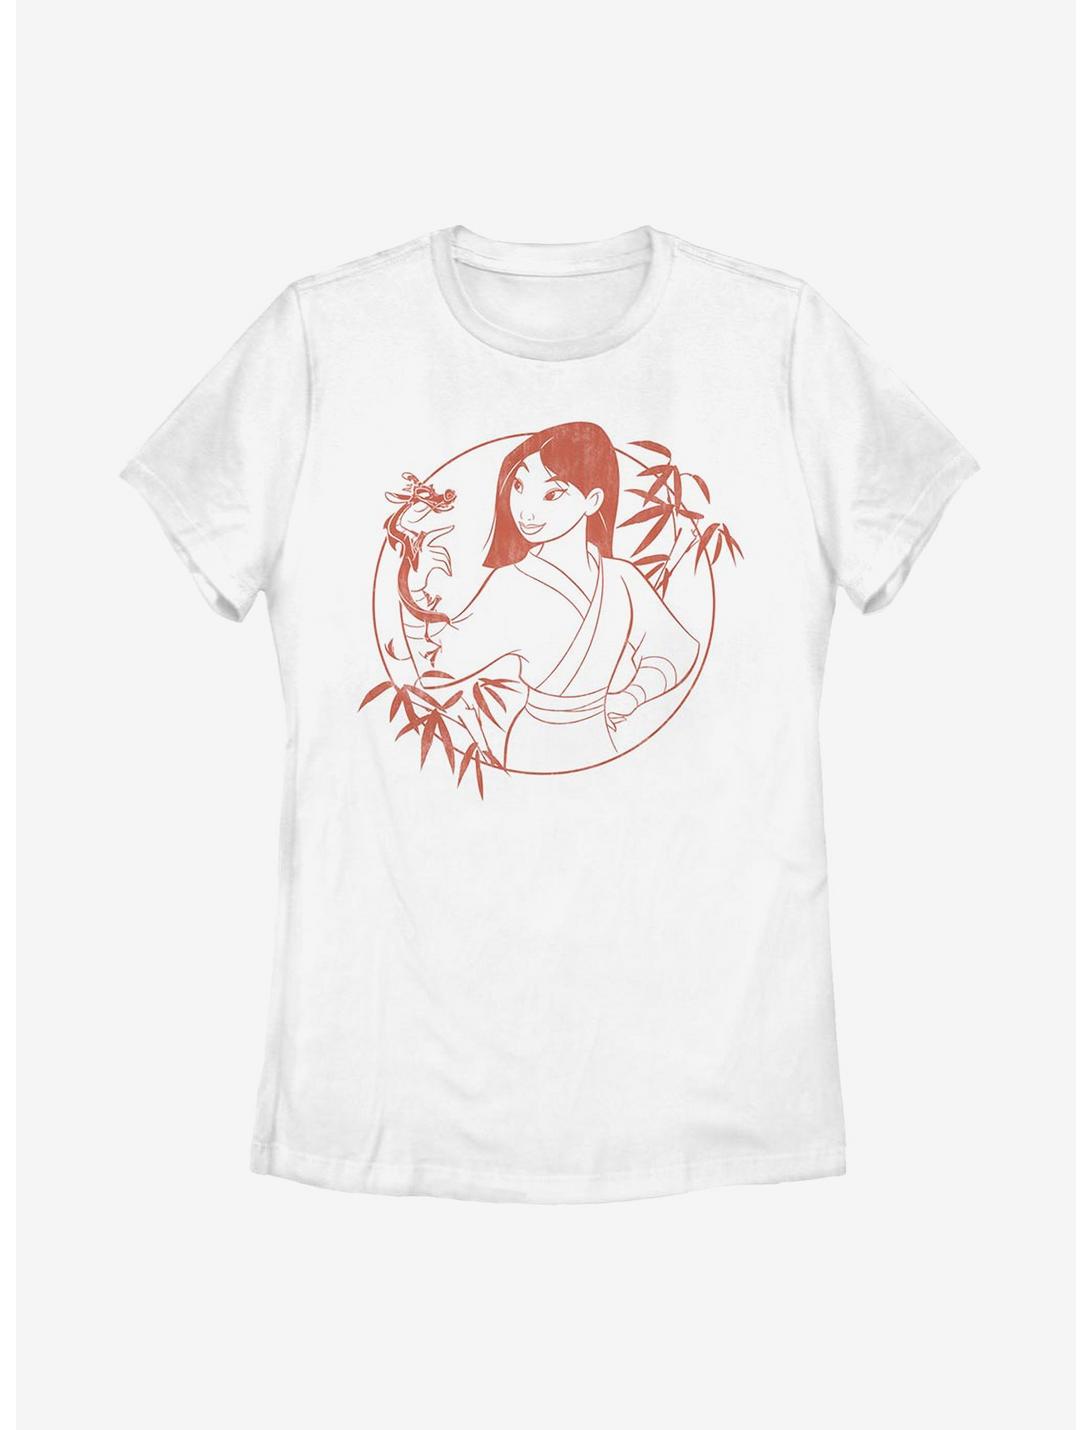 Plus Size Disney Mulan Bamboo Womens T-Shirt, WHITE, hi-res